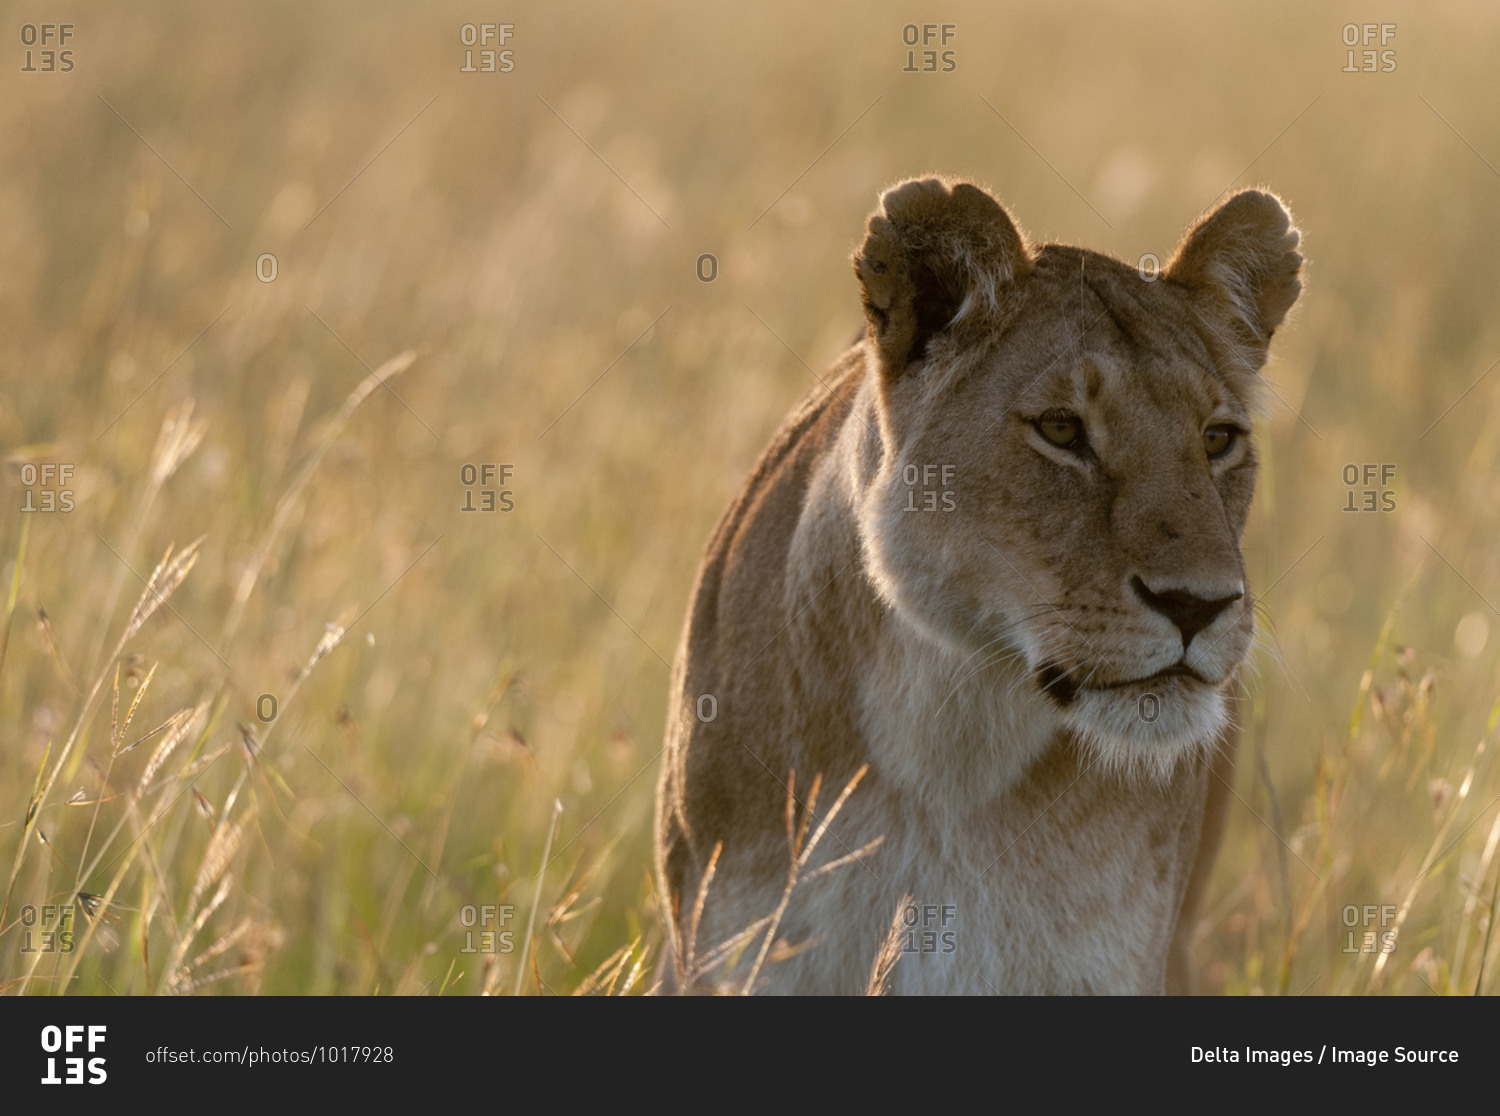 Lioness (Panthera leo), Masai Mara National Reserve, Kenya